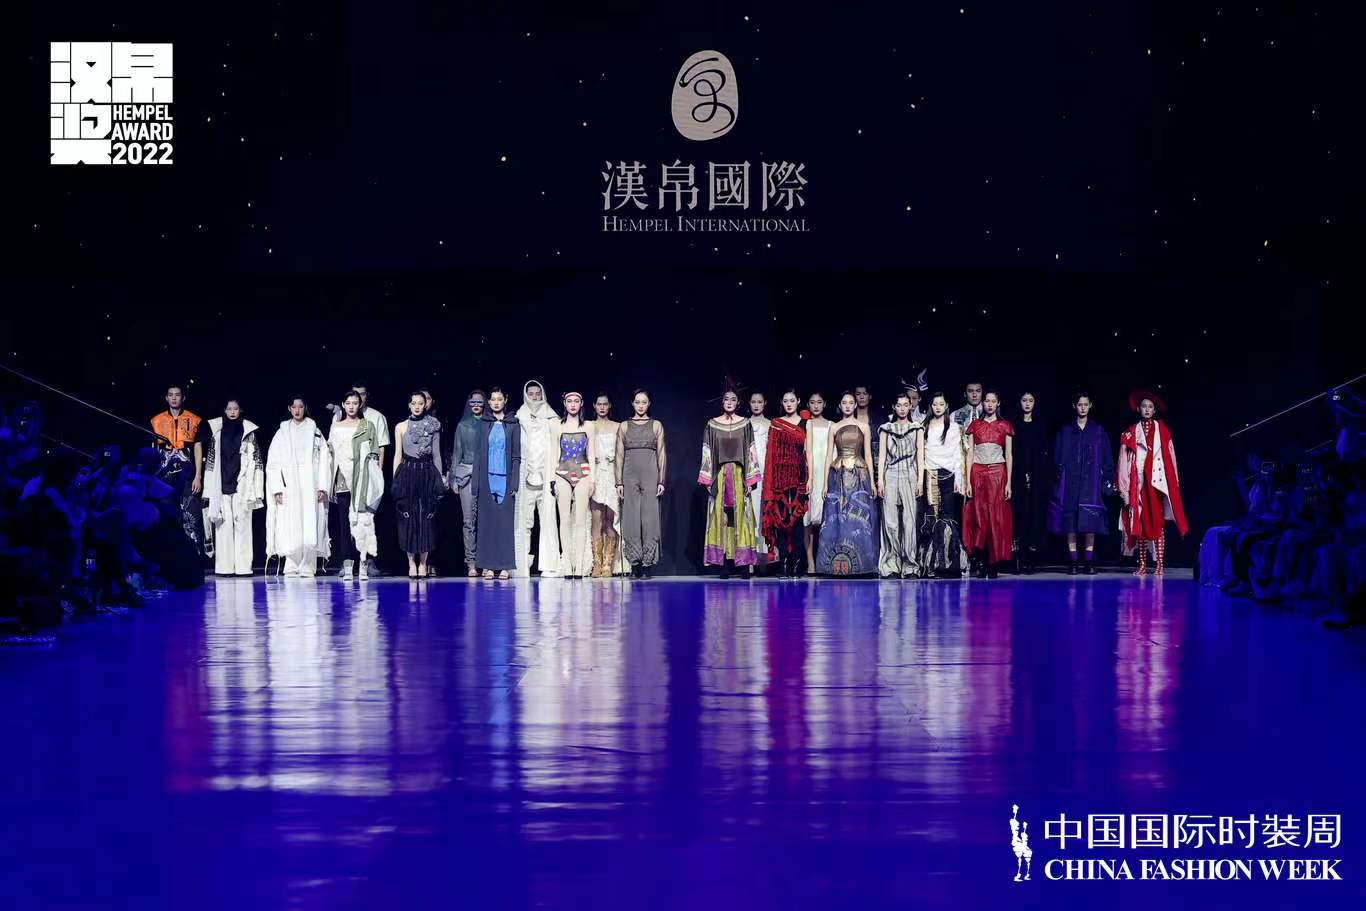 第30屆中國國際青年設計師時裝作品大賽總決賽點燃創意